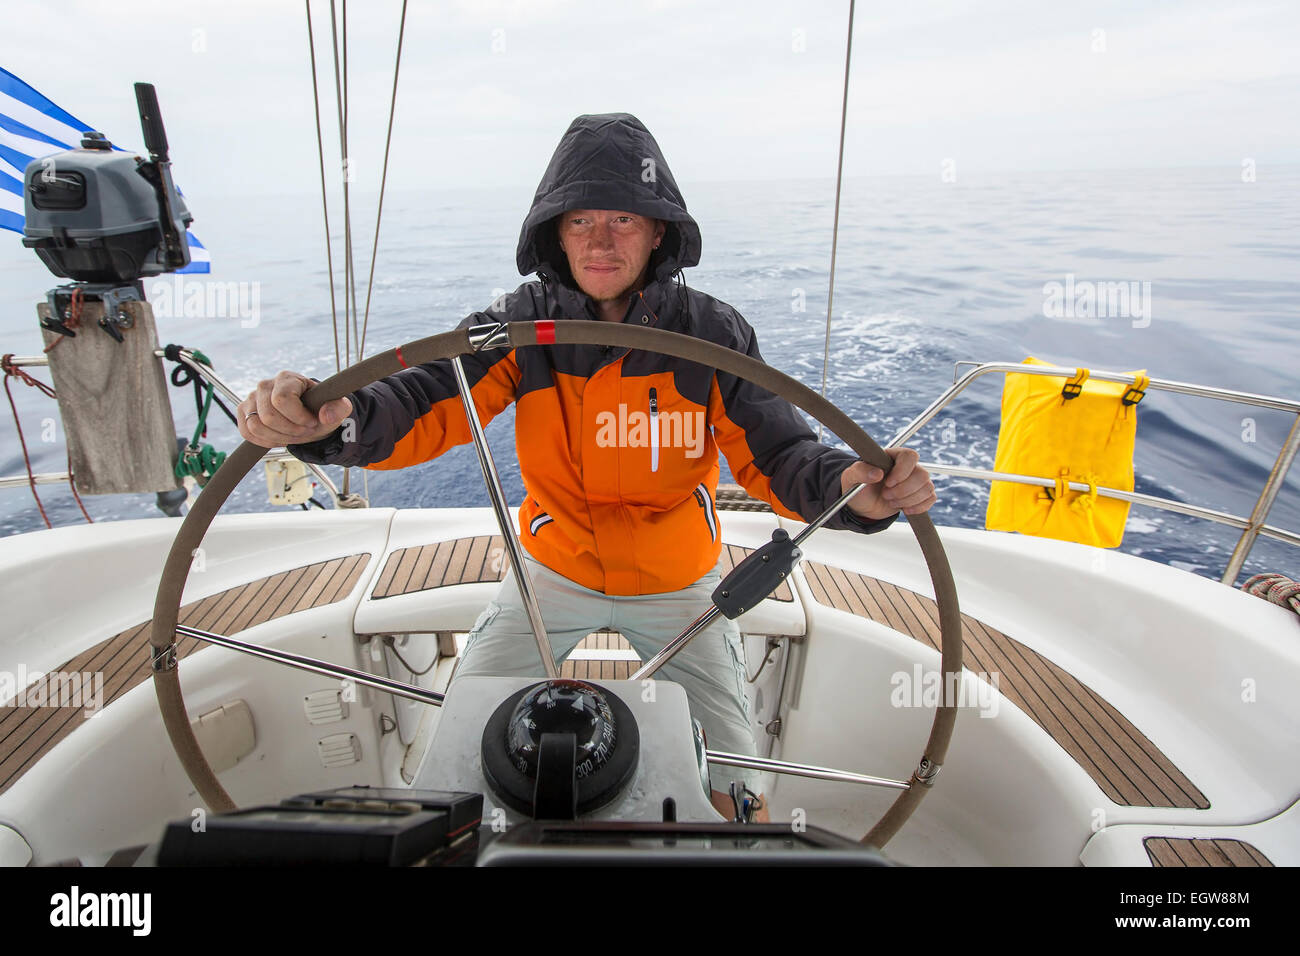 Jeune homme skipper dans la mer à la barre d'un yacht à voile Photo Stock -  Alamy